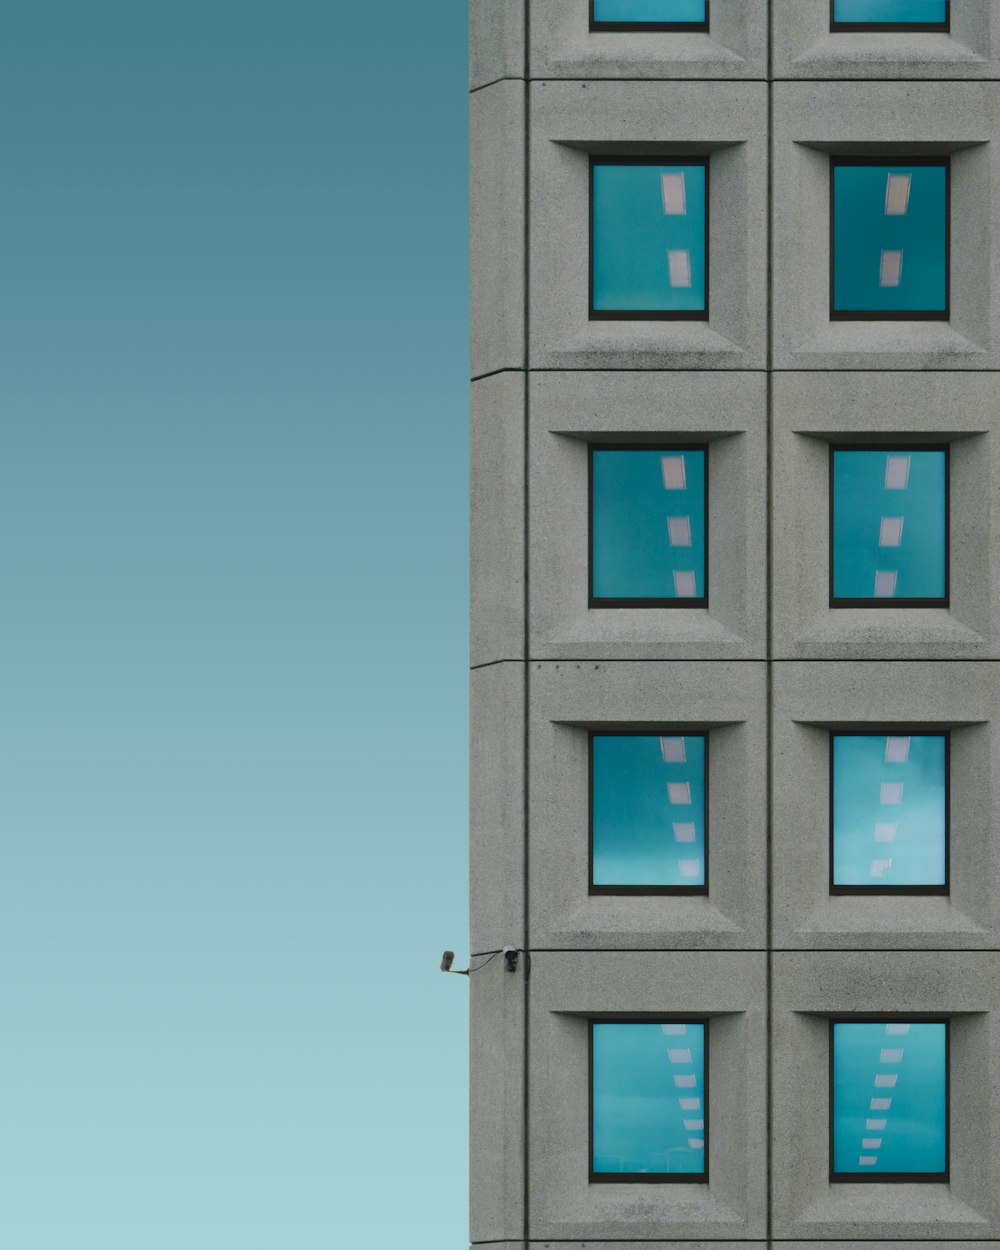 Gebäude aus grauem Beton mit Überwachungskameras